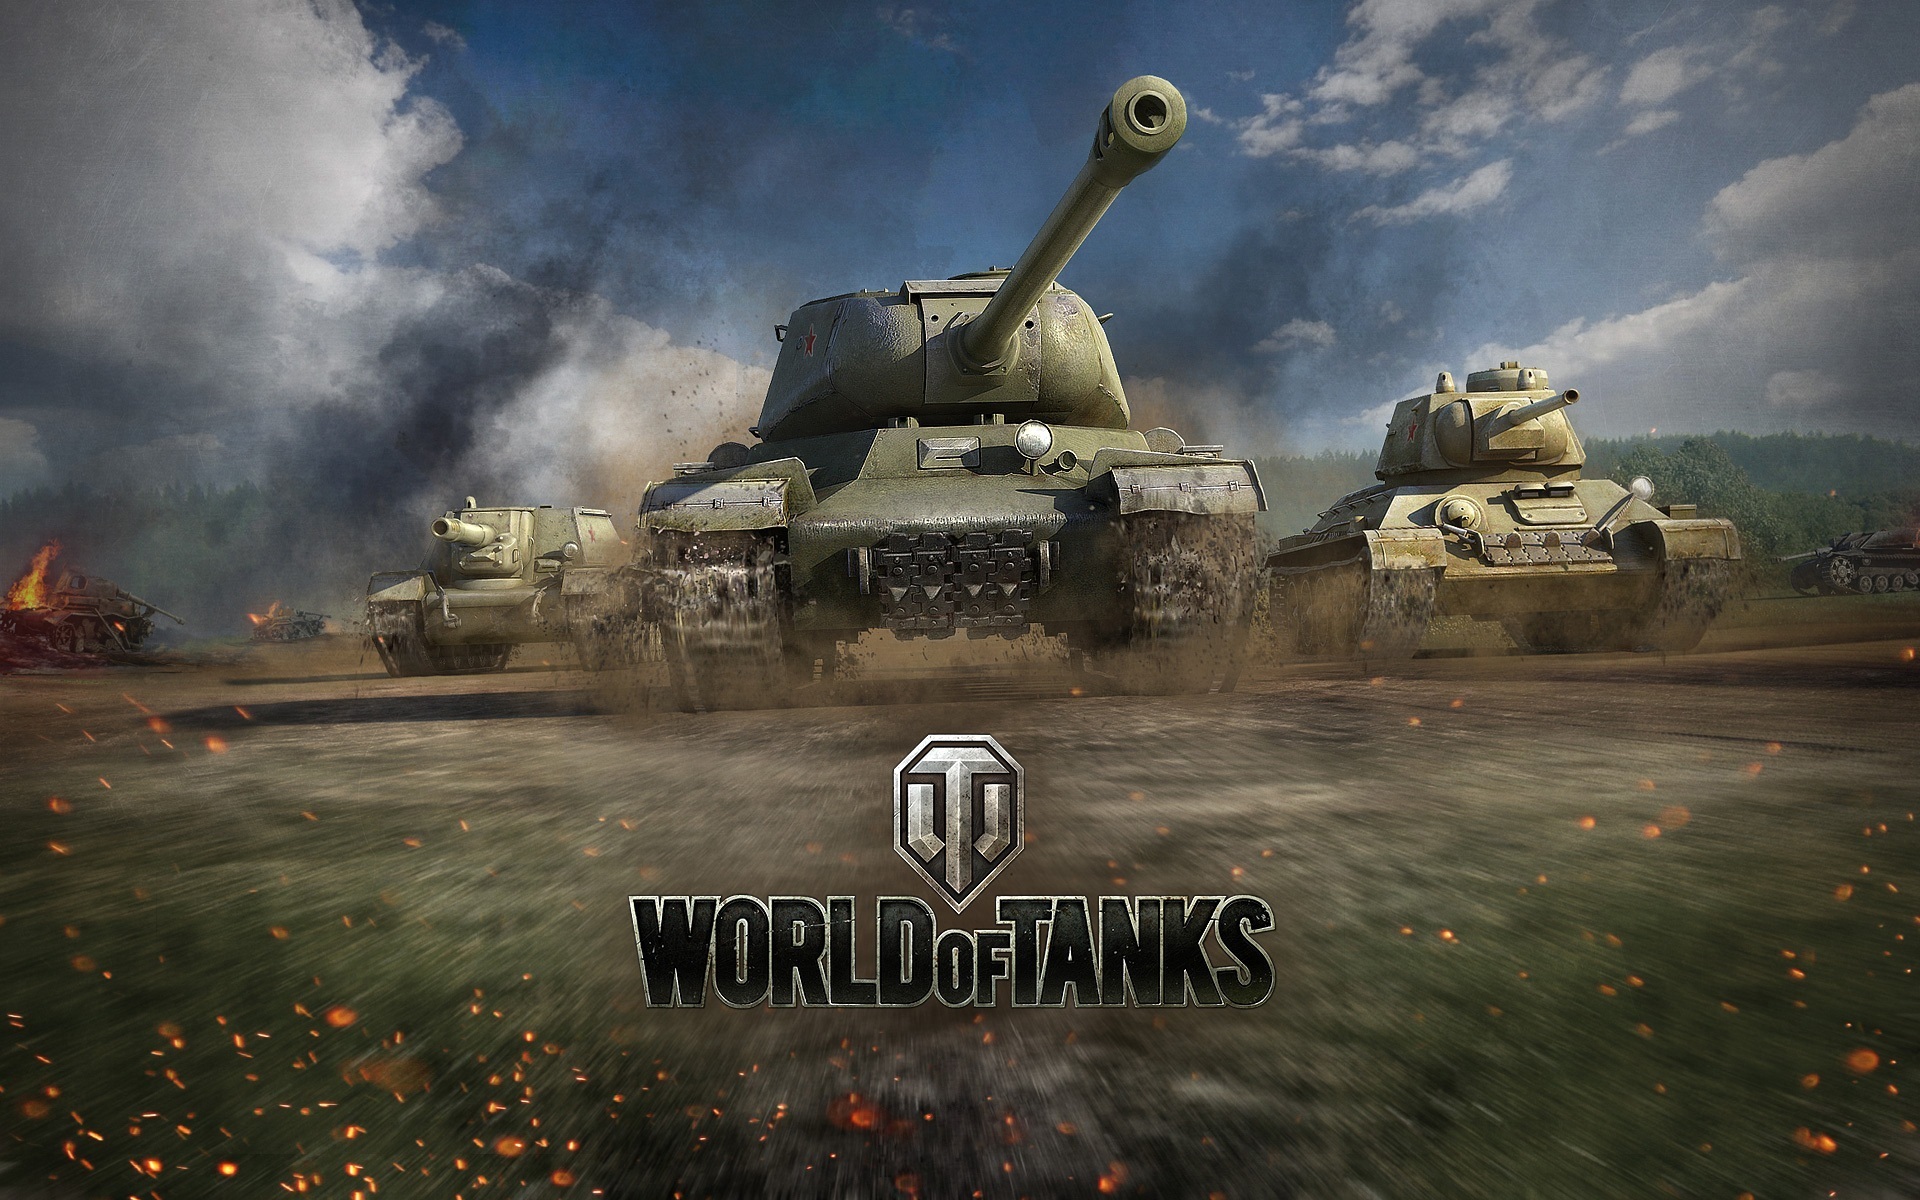 Как поднять статистику Word of Tanks? Есть действенные методы!